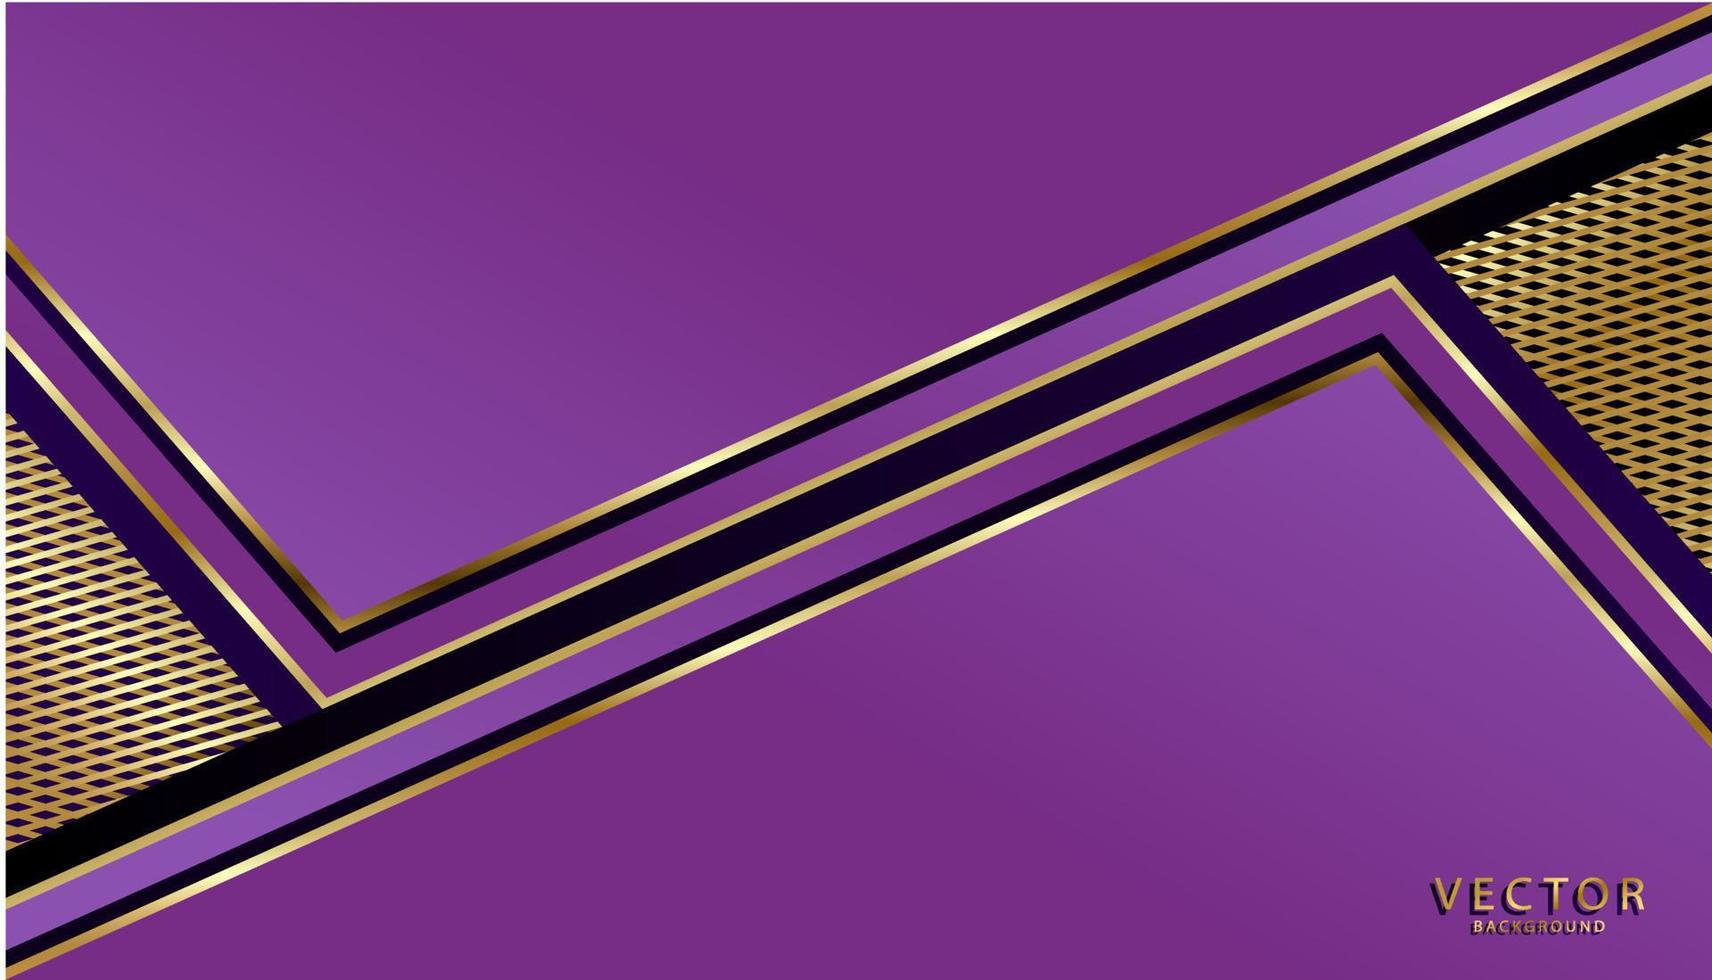 forme violette abstraite et fond de lignes avec des couleurs dorées. vecteur